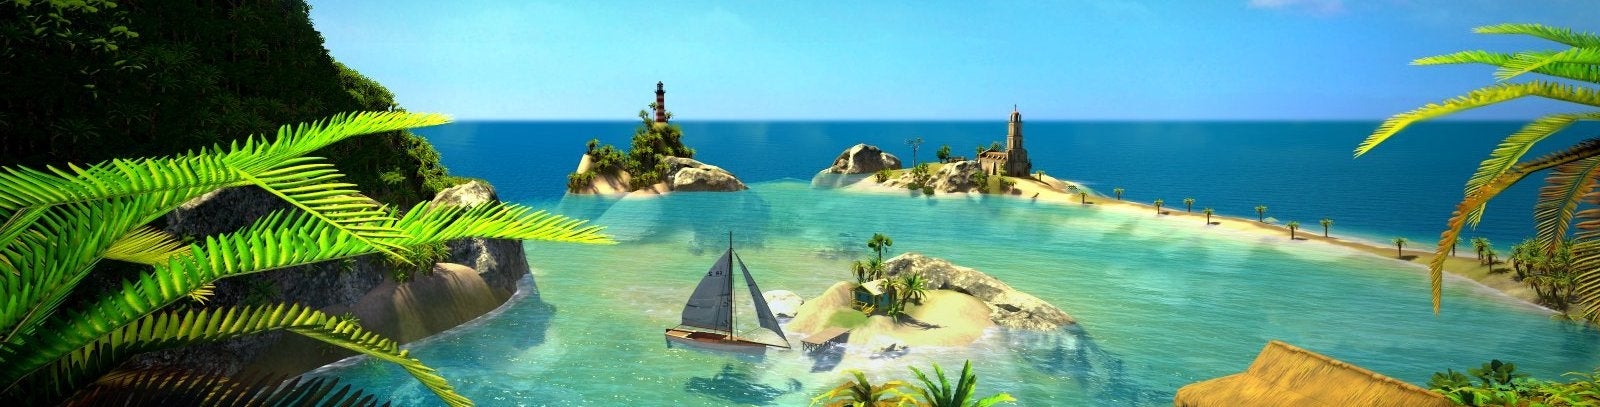 Obrazki dla Tropico 5 - Recenzja